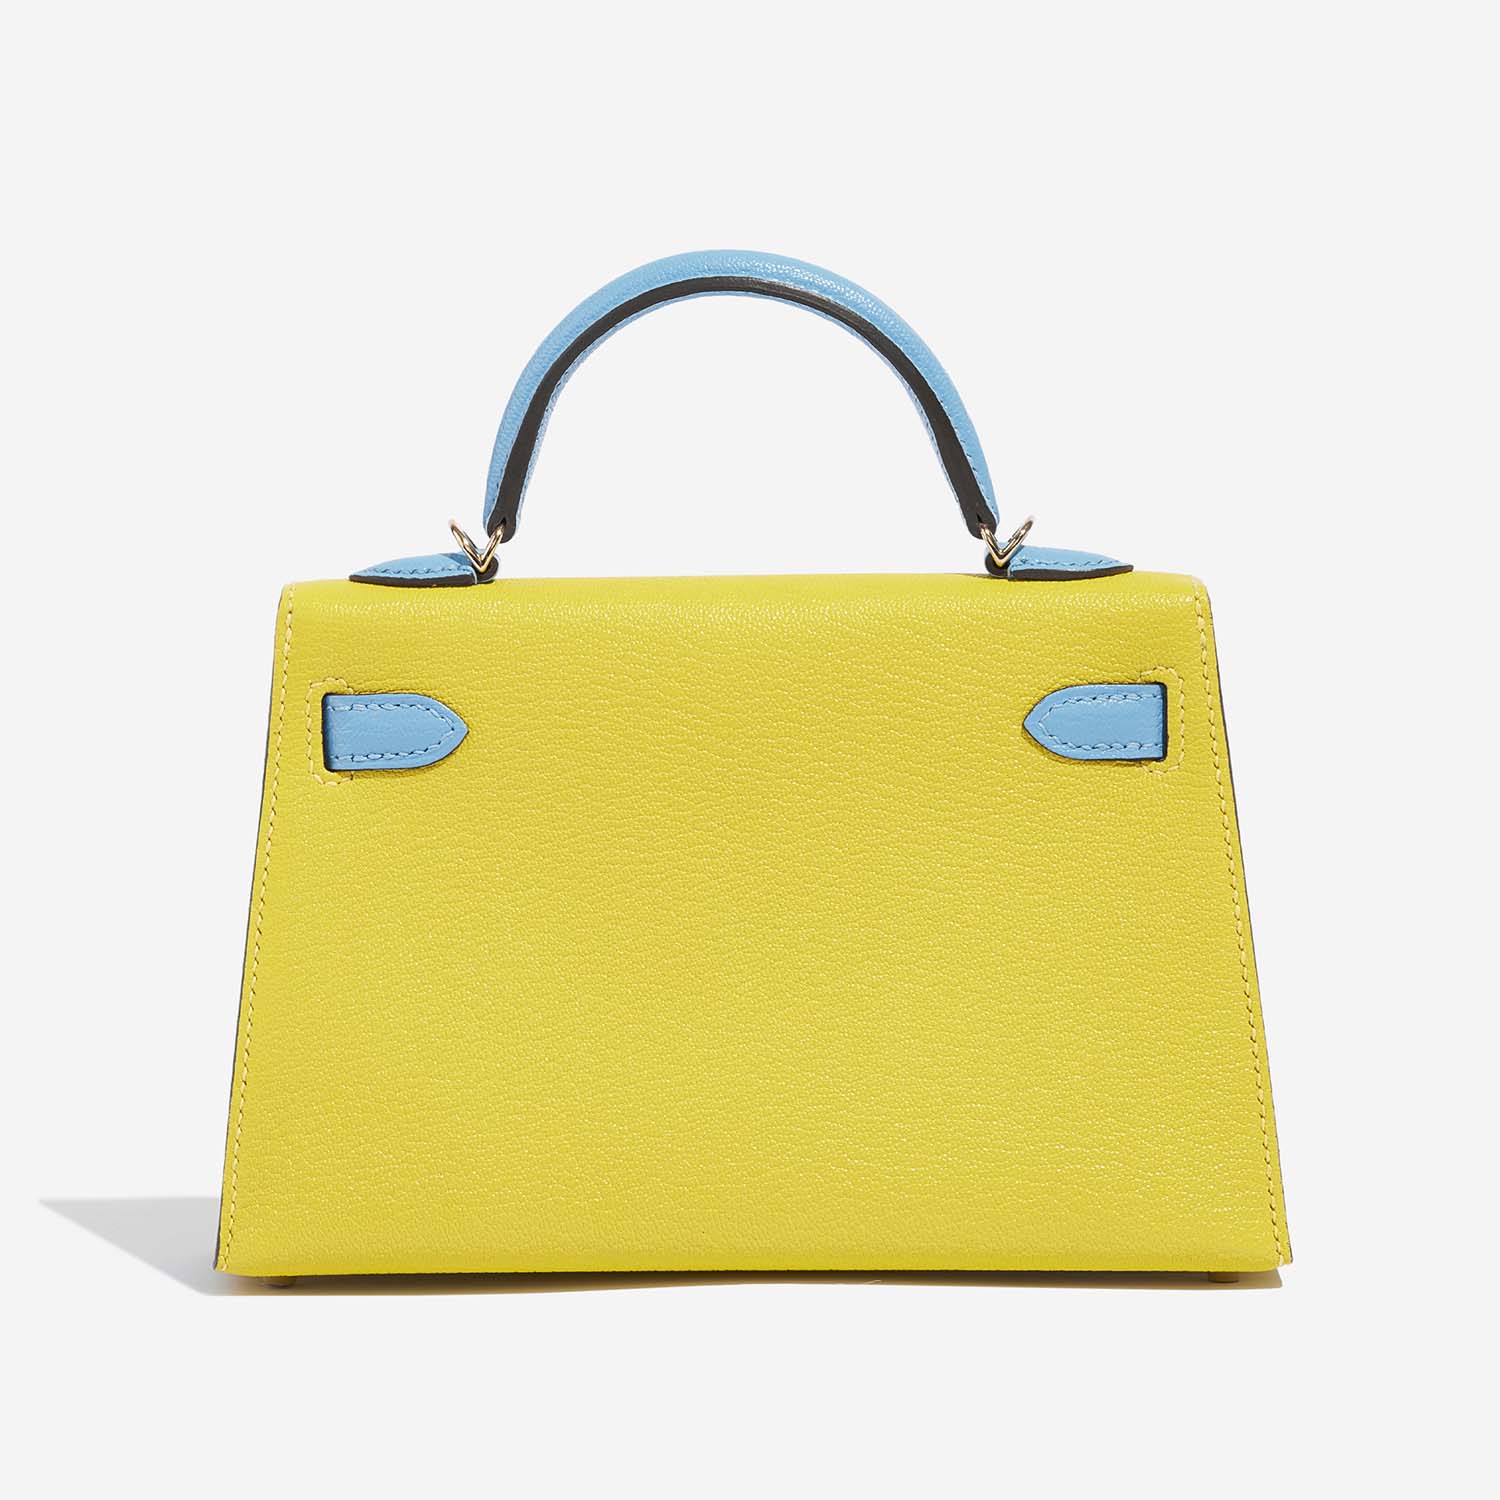 Hermès Kelly Mini Lime-BlueAztec Back | Verkaufen Sie Ihre Designer-Tasche auf Saclab.com